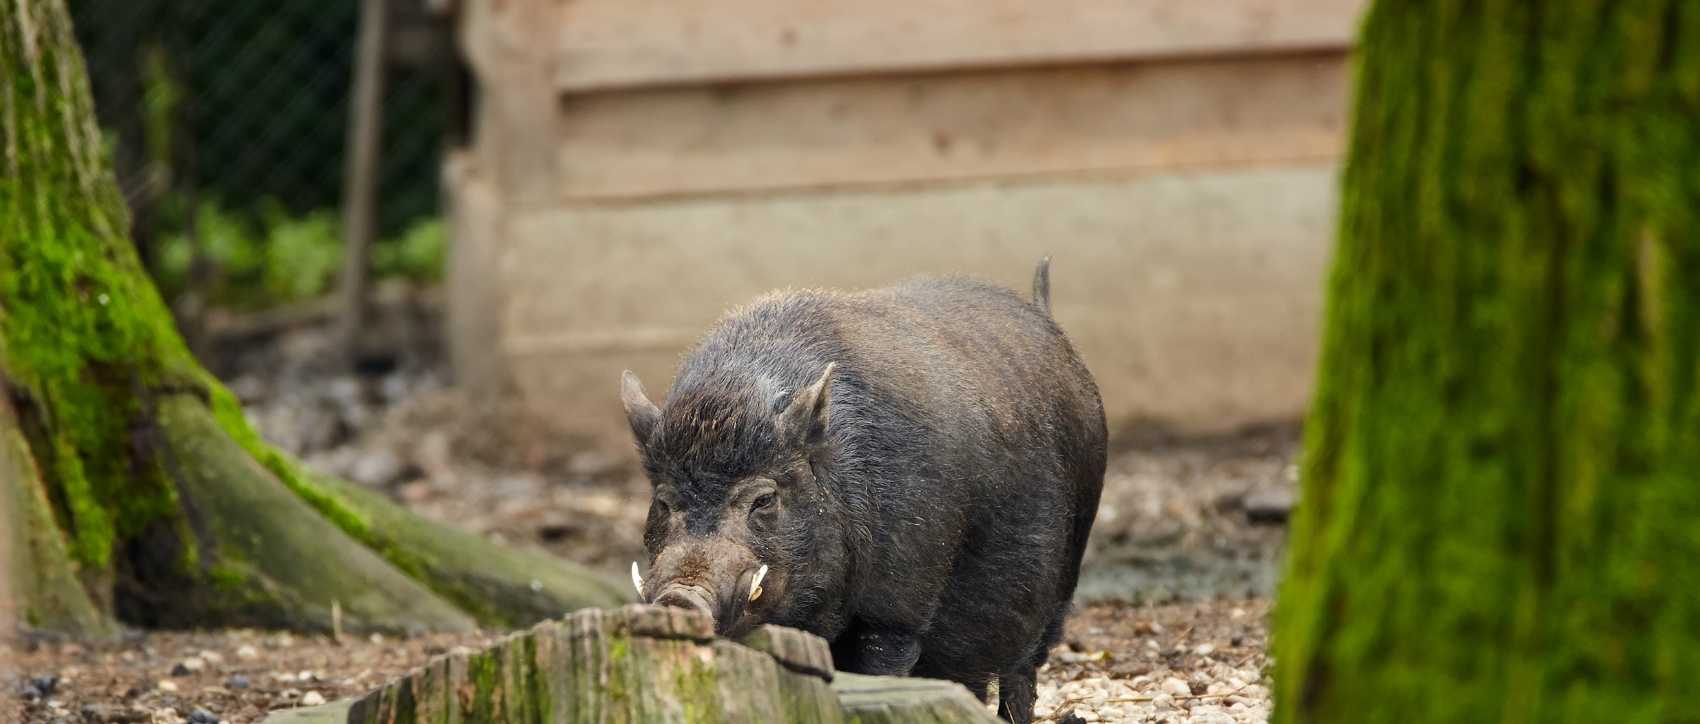 Cochon nain de gottingen : taille, description, biotope, habitat,  reproduction